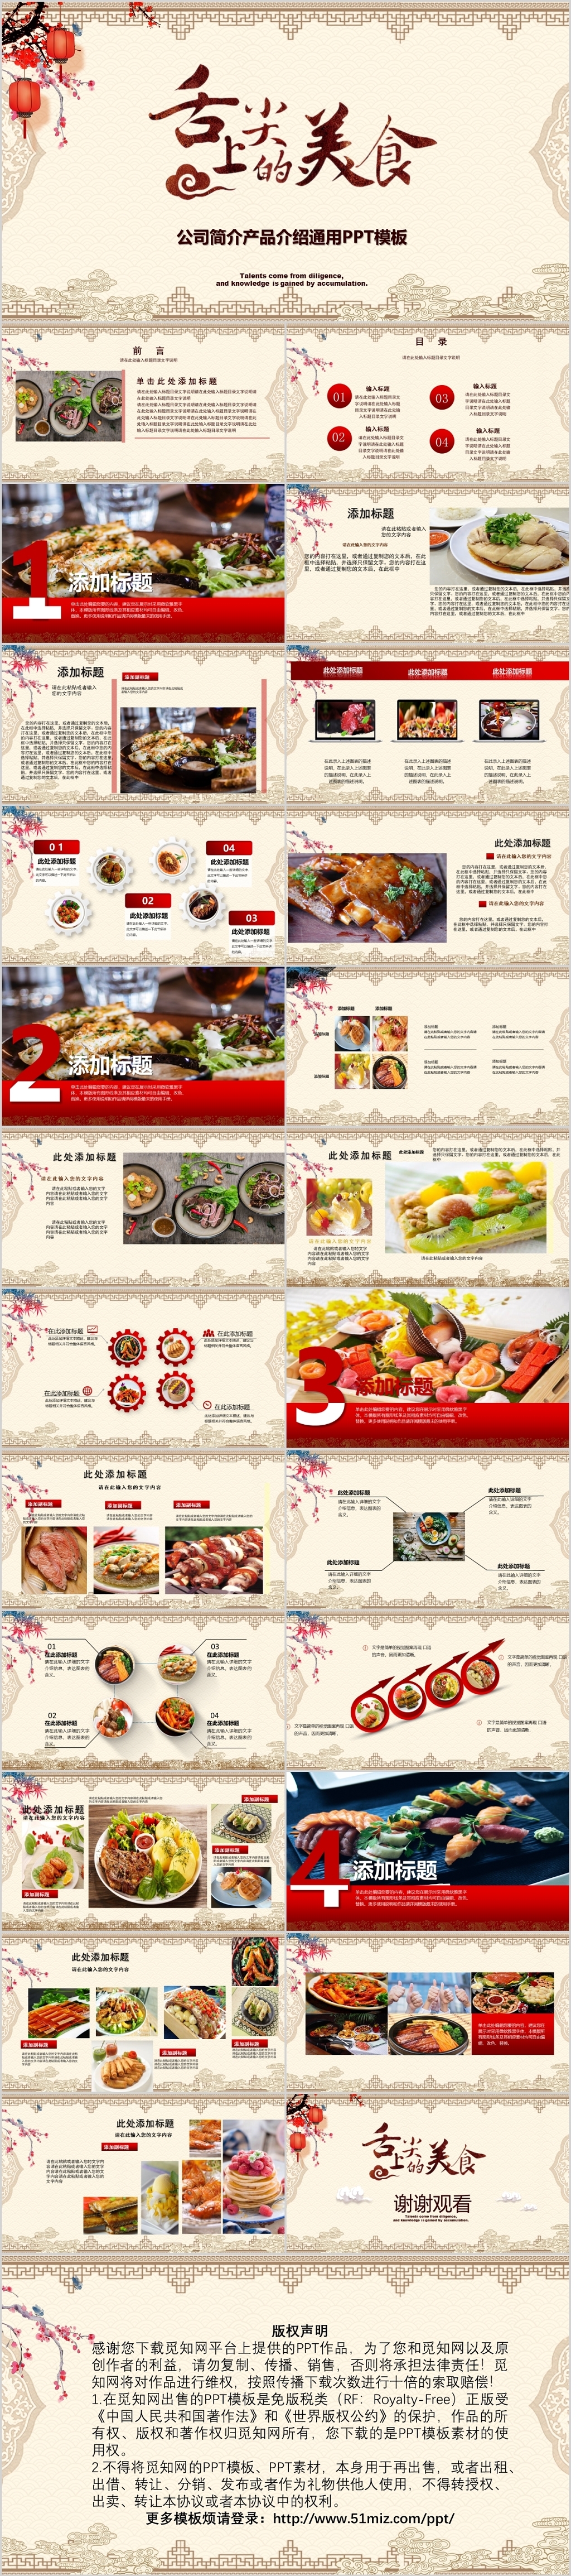 中国传统文化饮食餐饮美食ppt模板